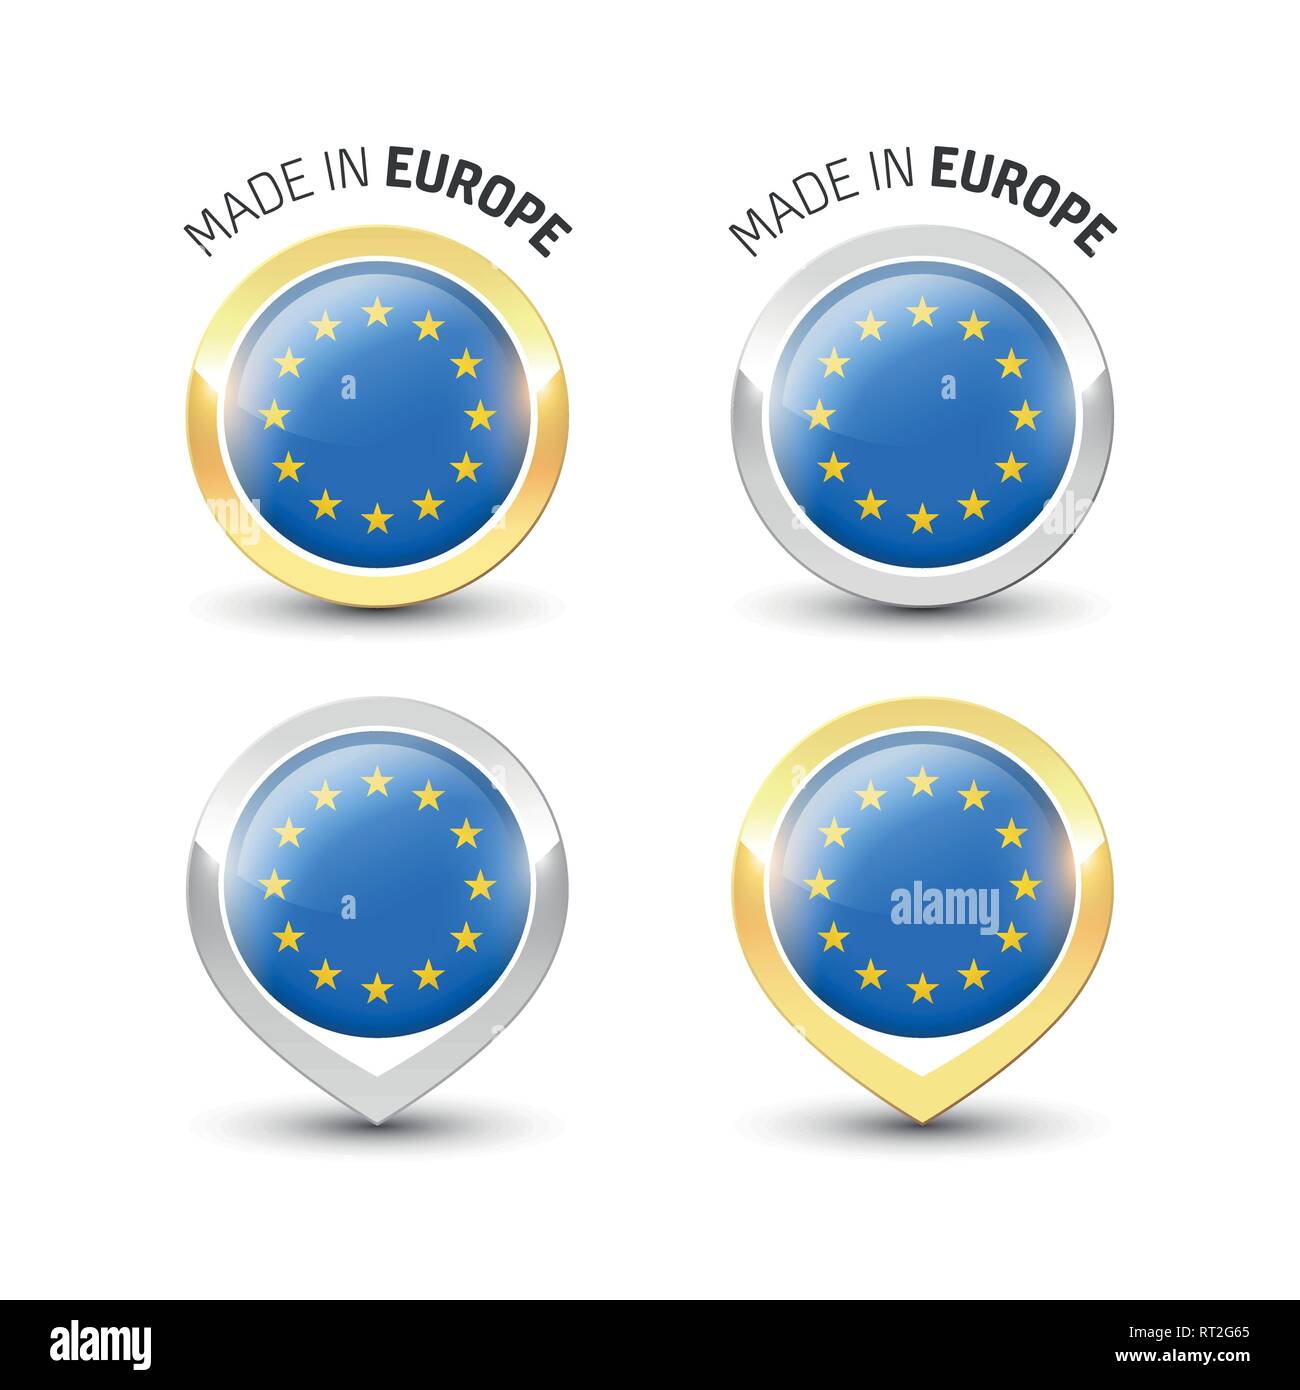 Realizzato in Europa UE - etichetta di garanzia con la bandiera dell'Unione europea all'interno del turno oro e argento icone. Illustrazione Vettoriale